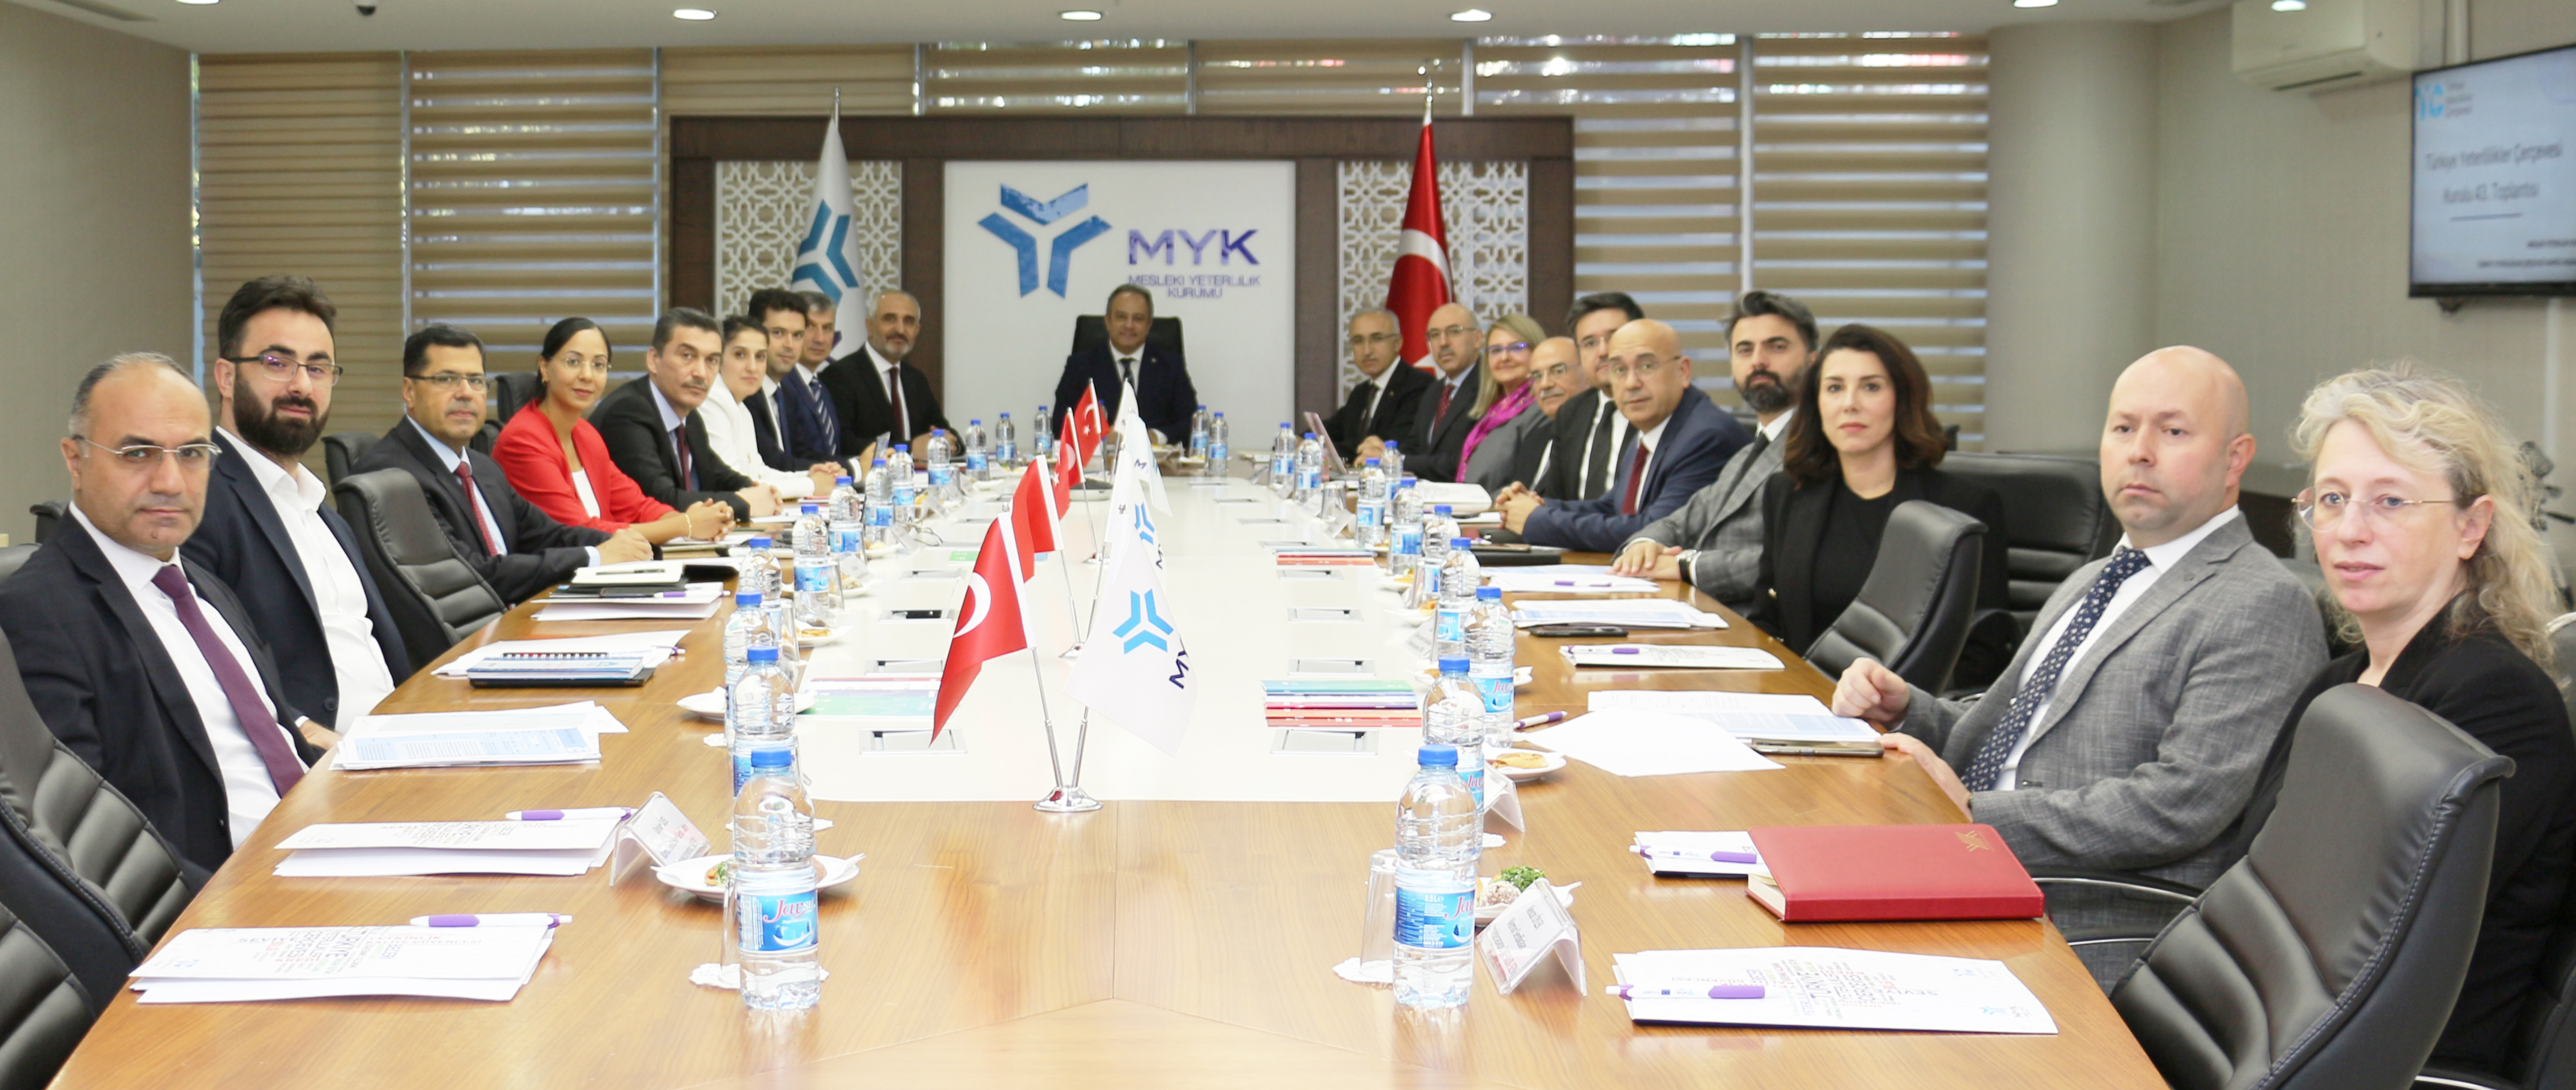 Mesleki Yeterlilik Kurumumuz koordinasyonunda Türkiye Yeterlilikler Çerçevesi Kurulu 43. Toplantısı gerçekleştirildi. 